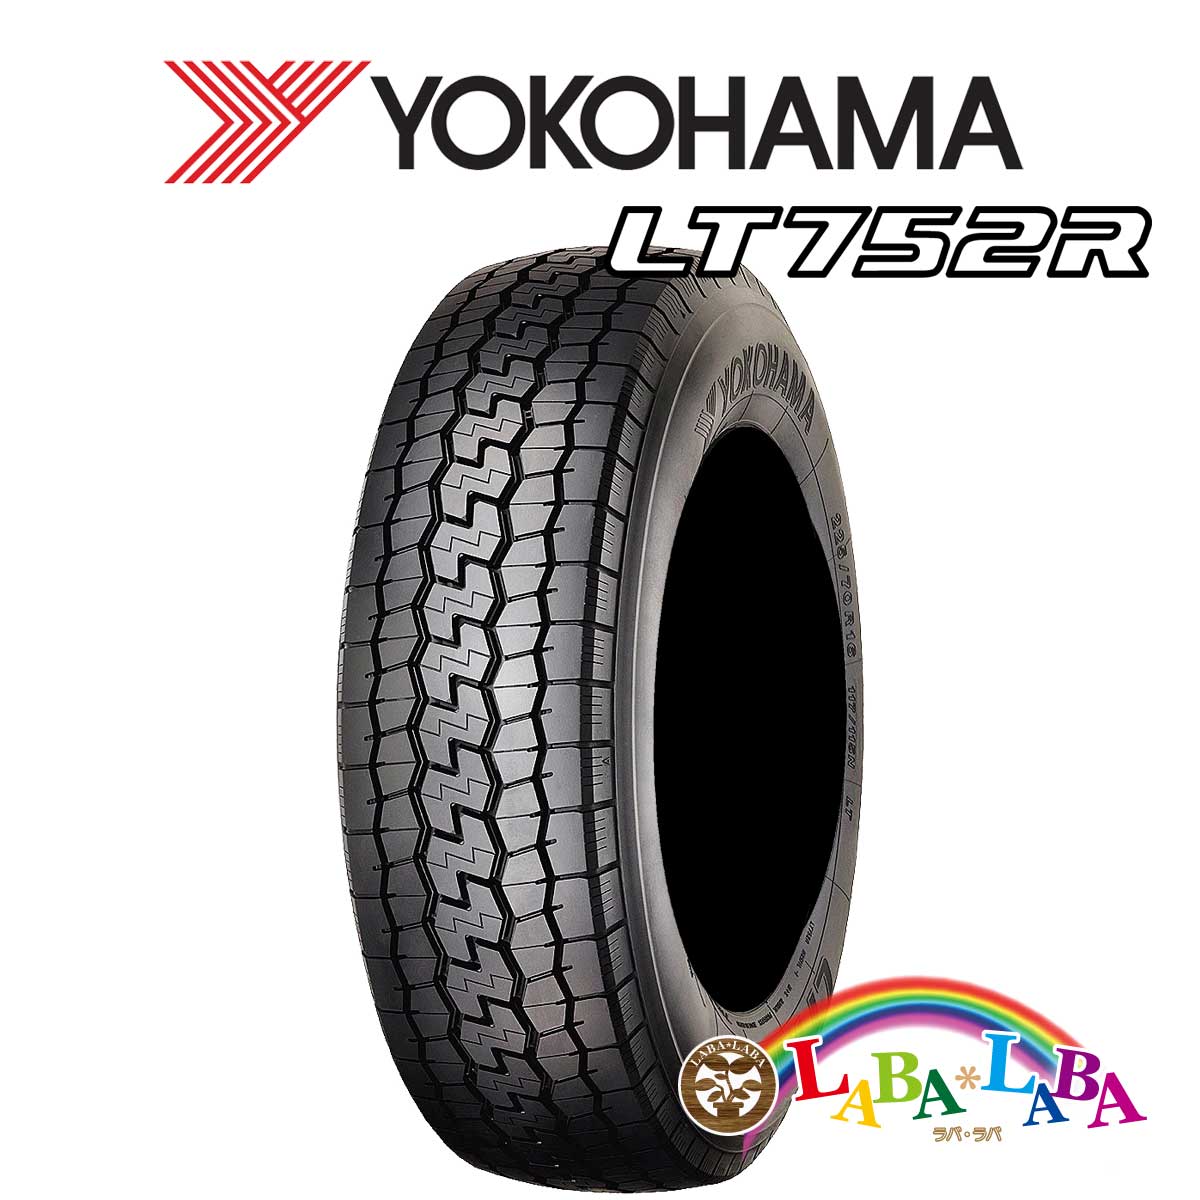 送料無料 輸入タイヤ サマータイヤ 新品 タイヤのみ 2本SET YOKOHAMA ヨコハマ 全商品オープニング価格 2本セット 107N 日本産 65R16 205 LT752R LT 109 バン